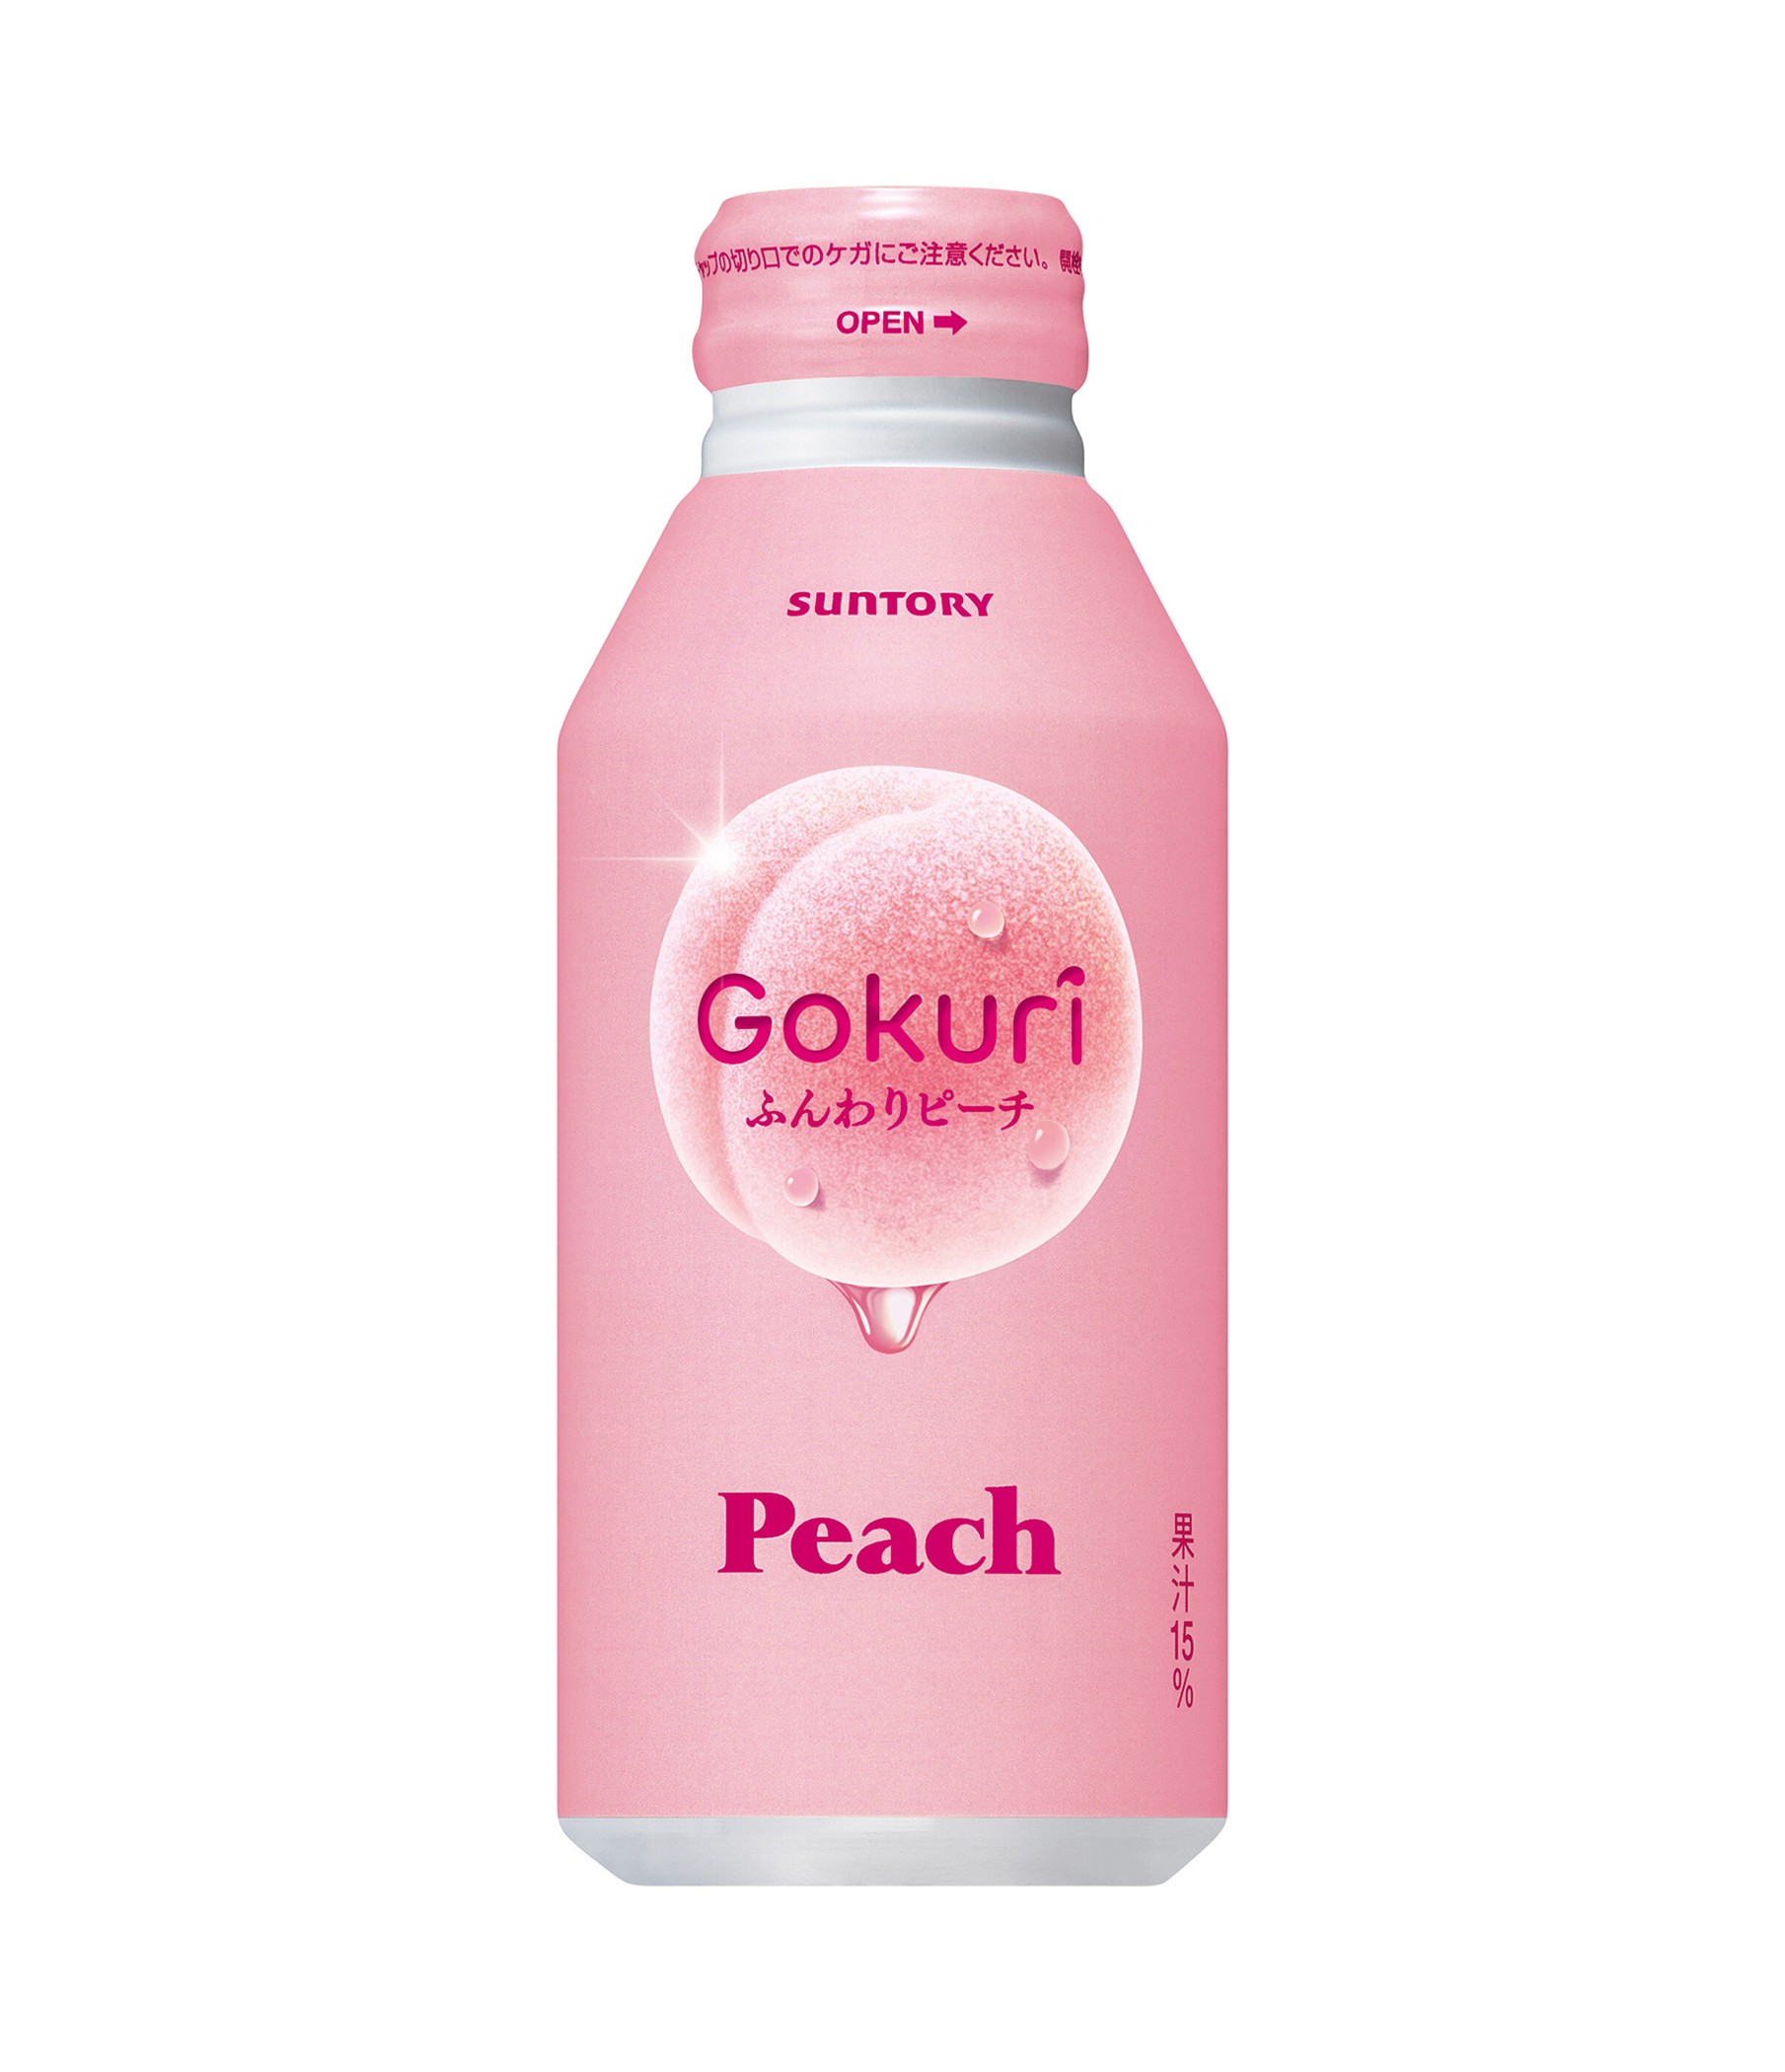 suntory-gokuri-peach-juice